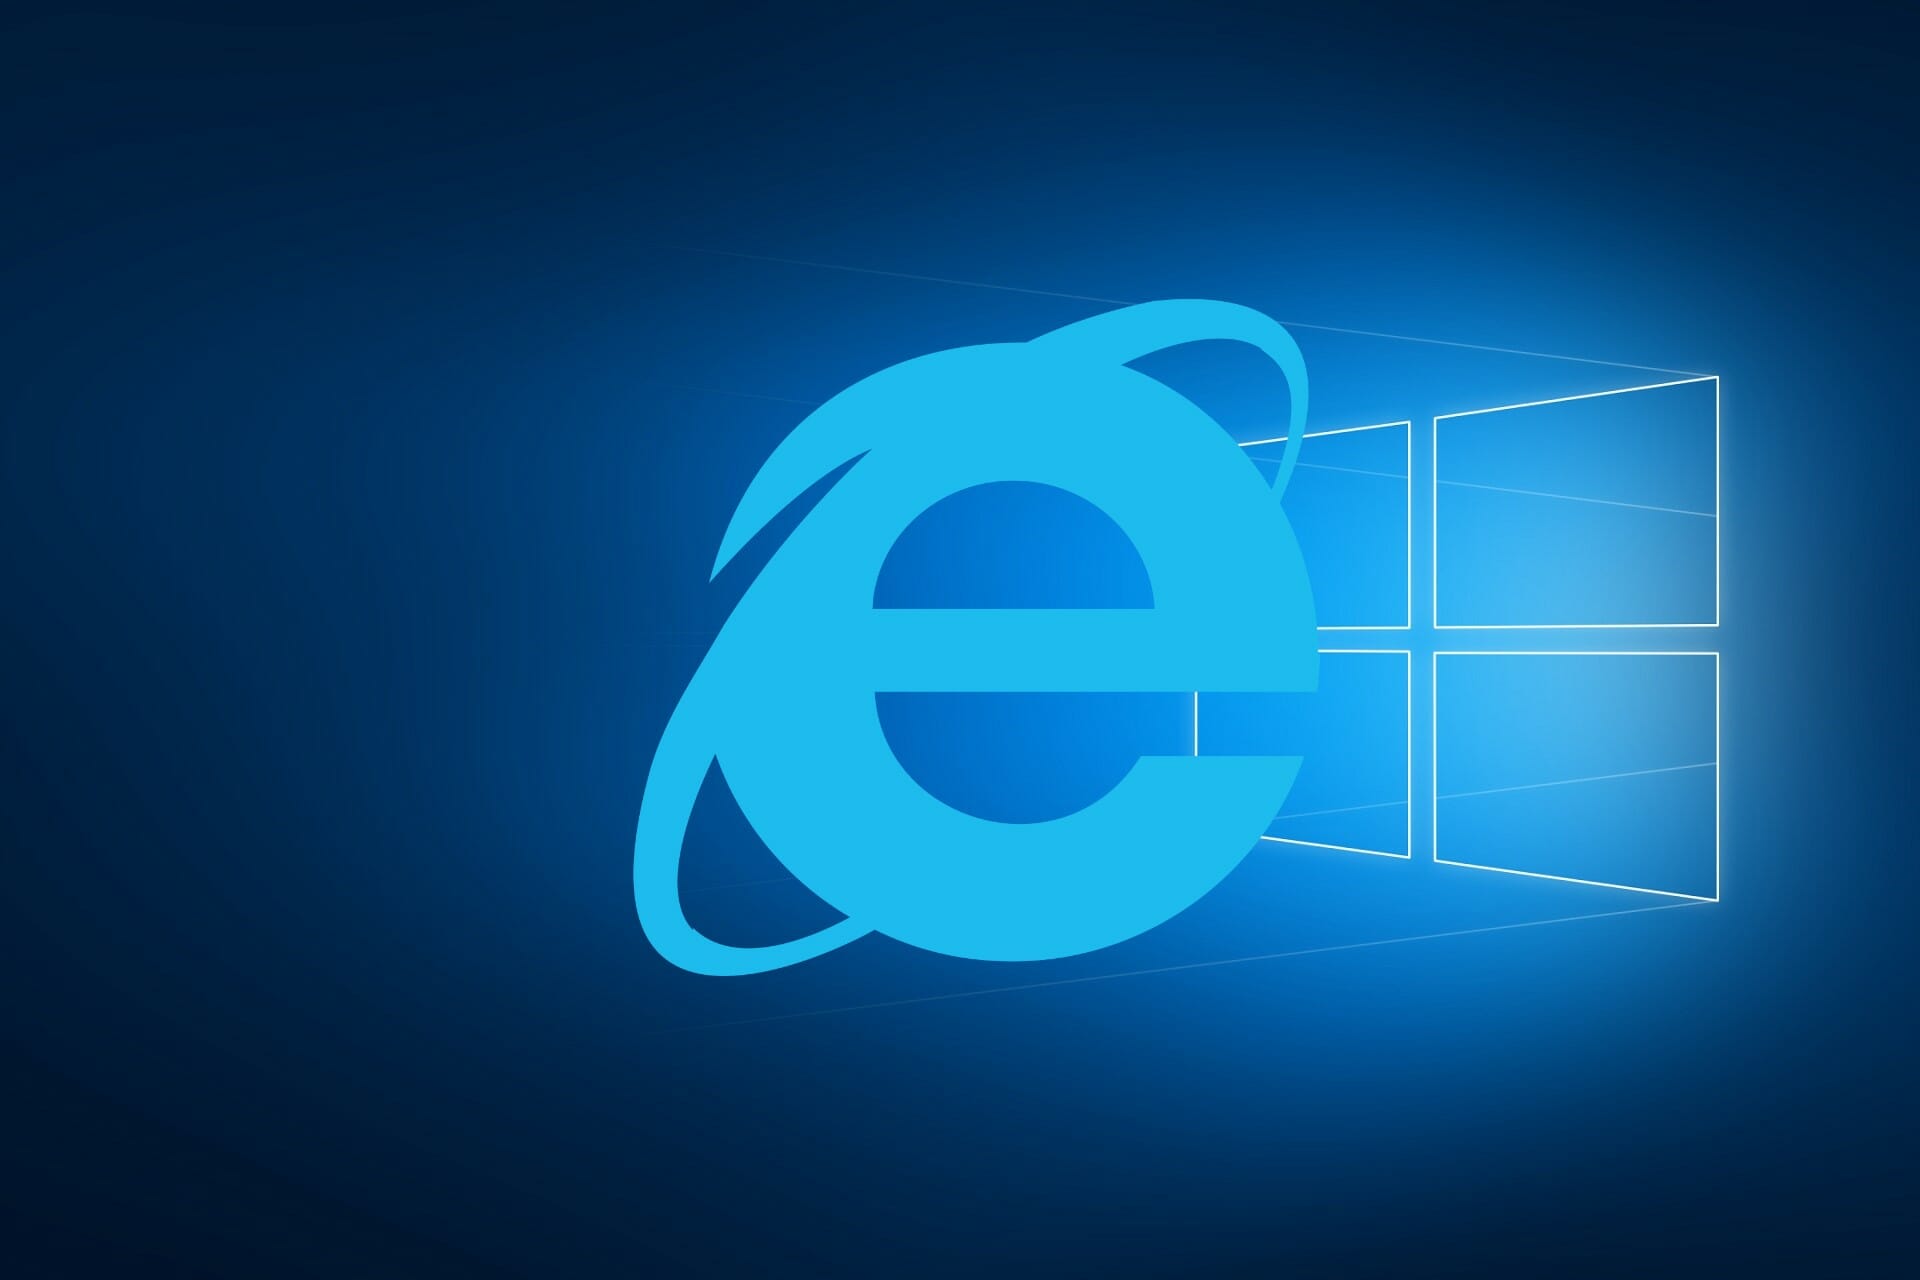 O IE será removido do Windows 10?